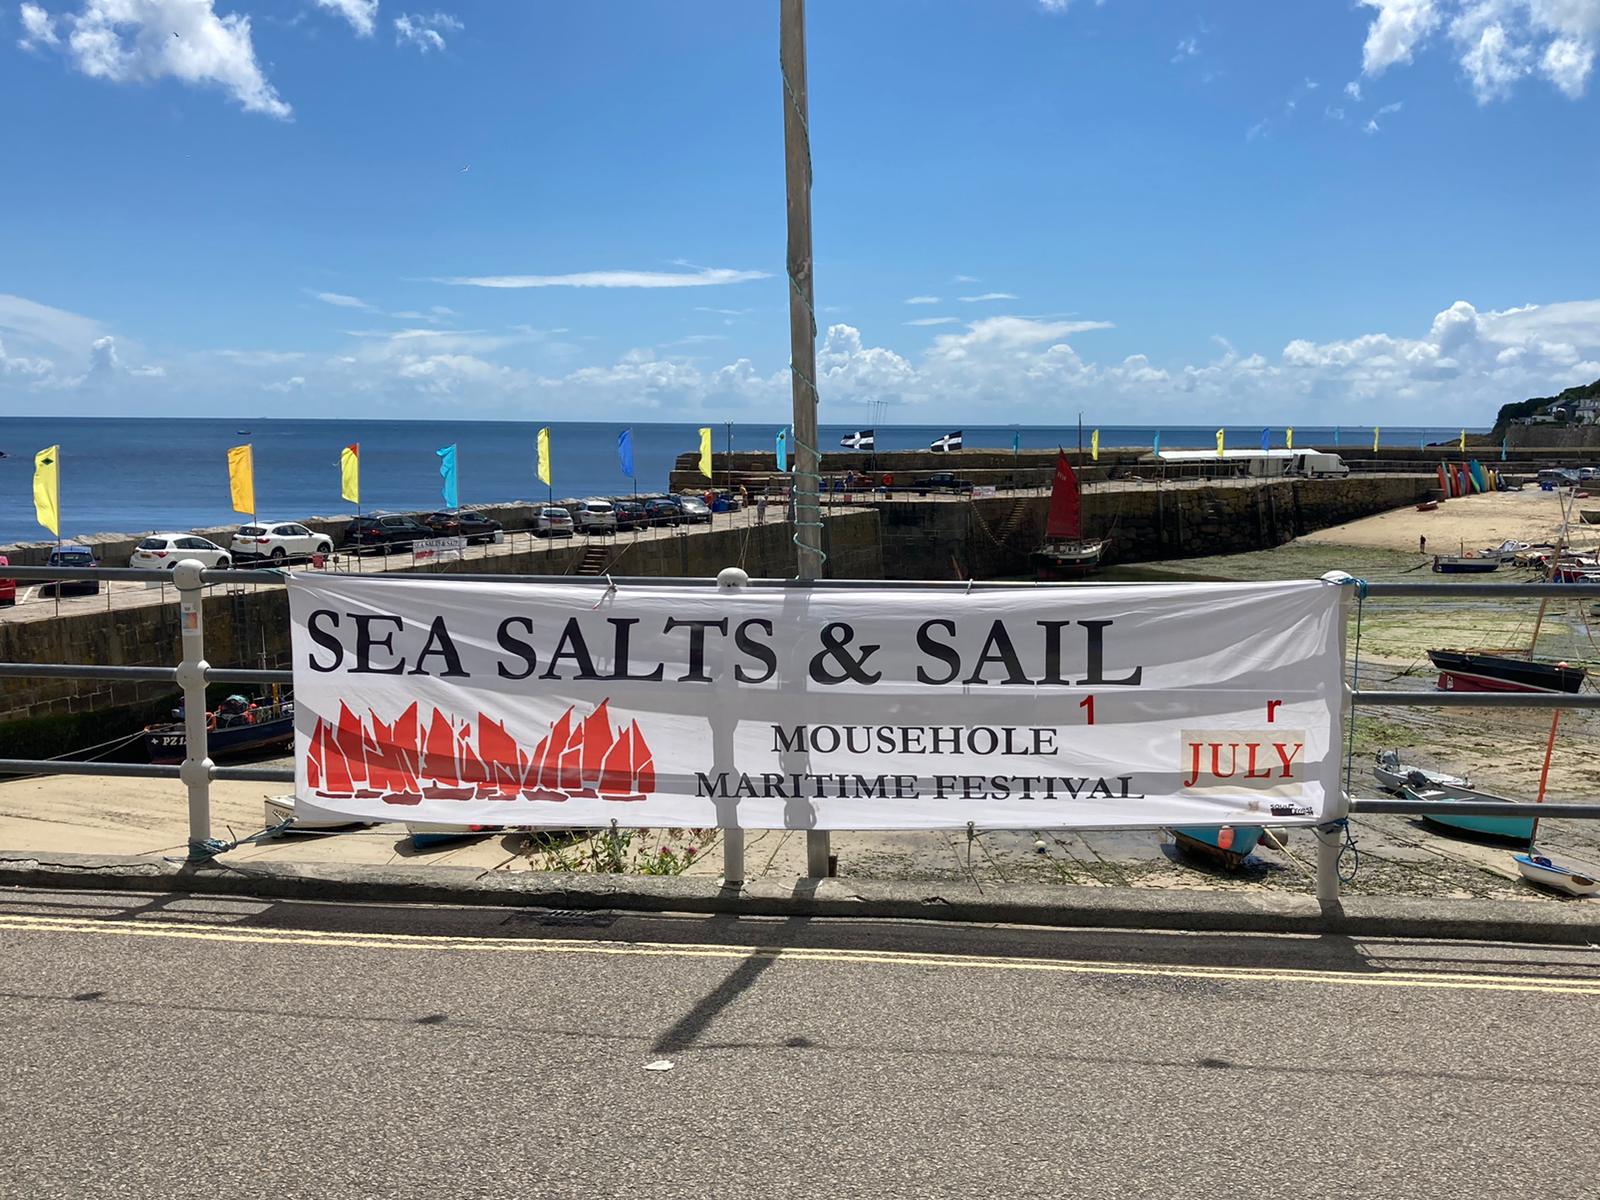 Sea Salts & Sail - Mousehole Archive exhibition